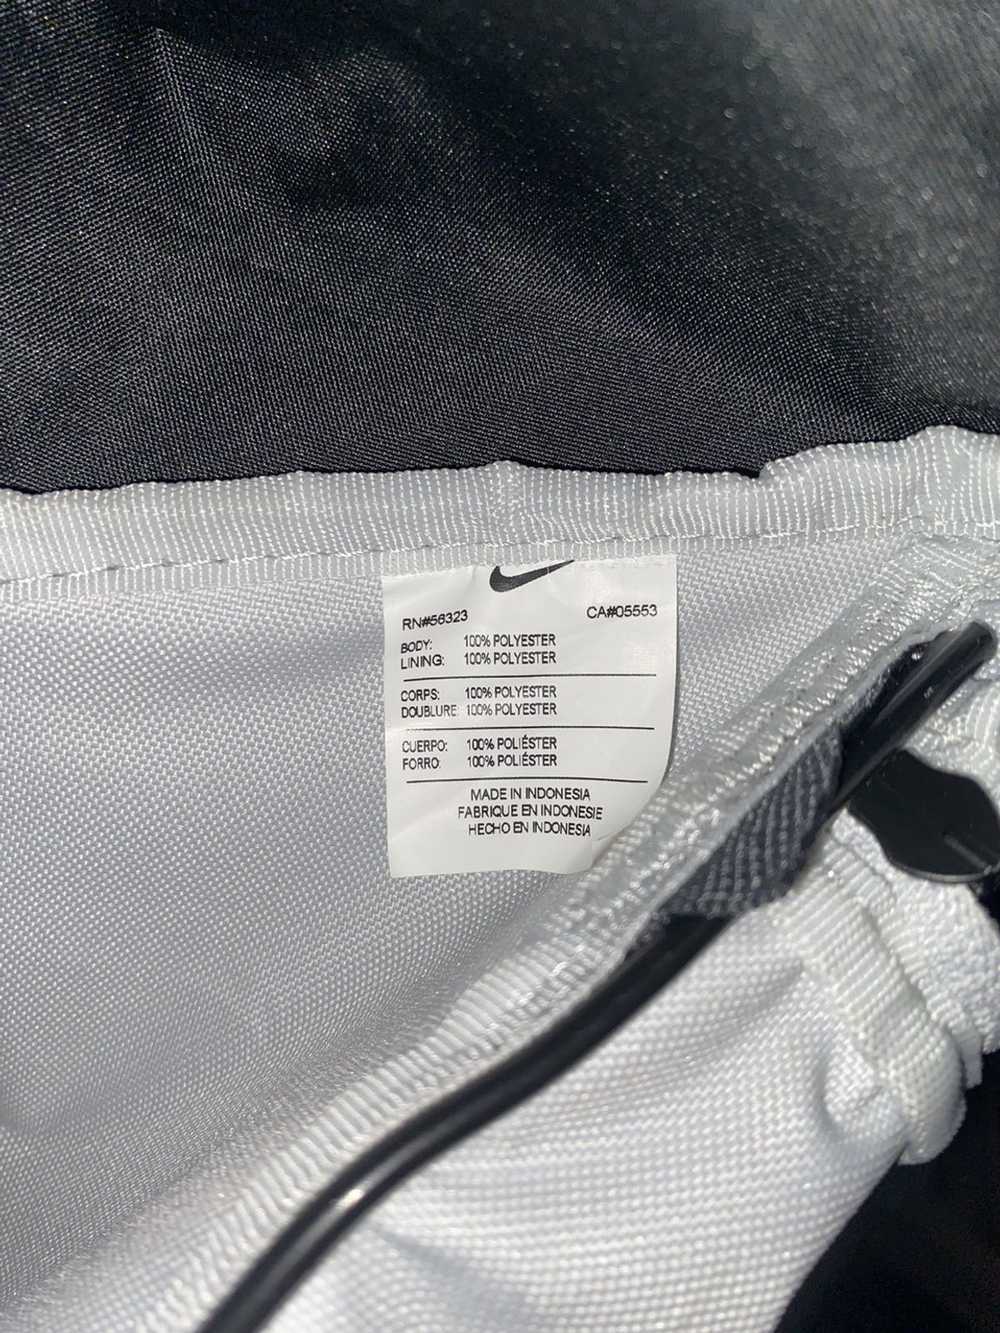 Nike Nike sports training bag - image 7